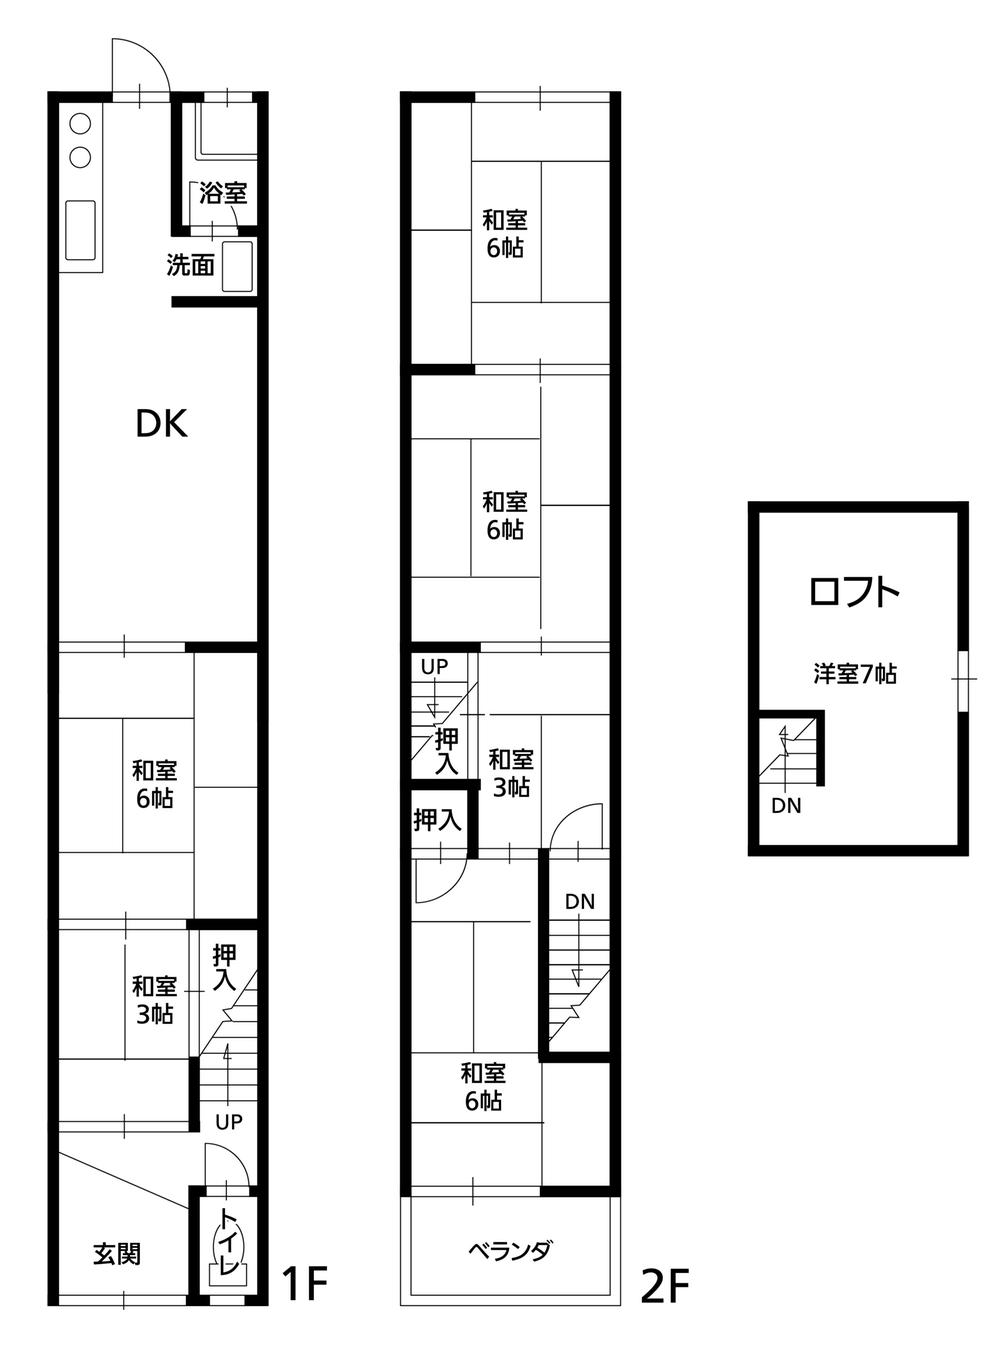 Floor plan. 8,810,000 yen, 6DK + S (storeroom), Land area 52.64 sq m , Building area 79.17 sq m